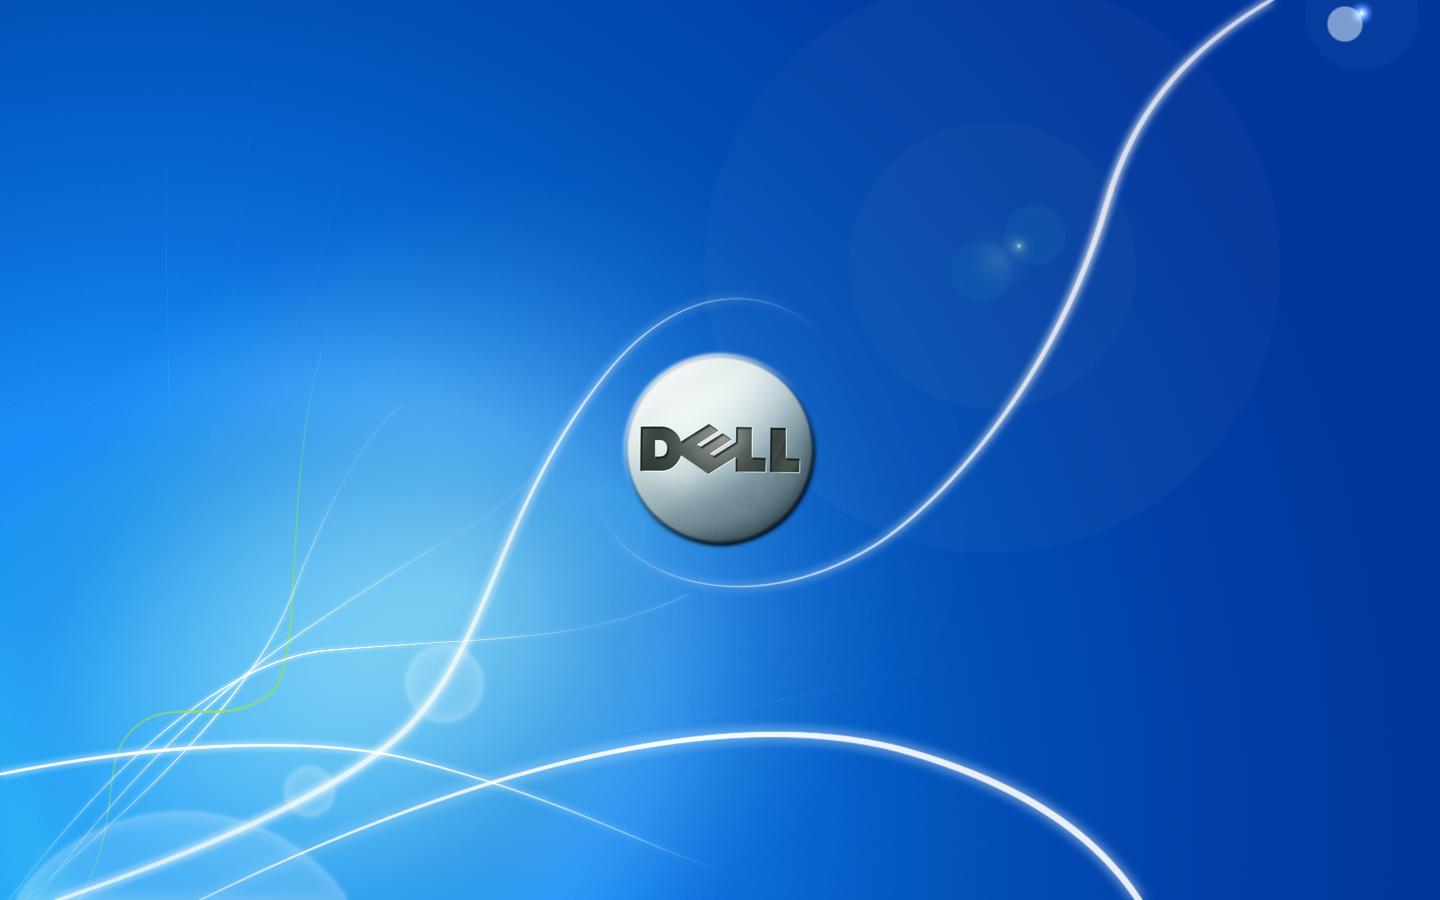 Dell Desktop Wallpaper Inbox